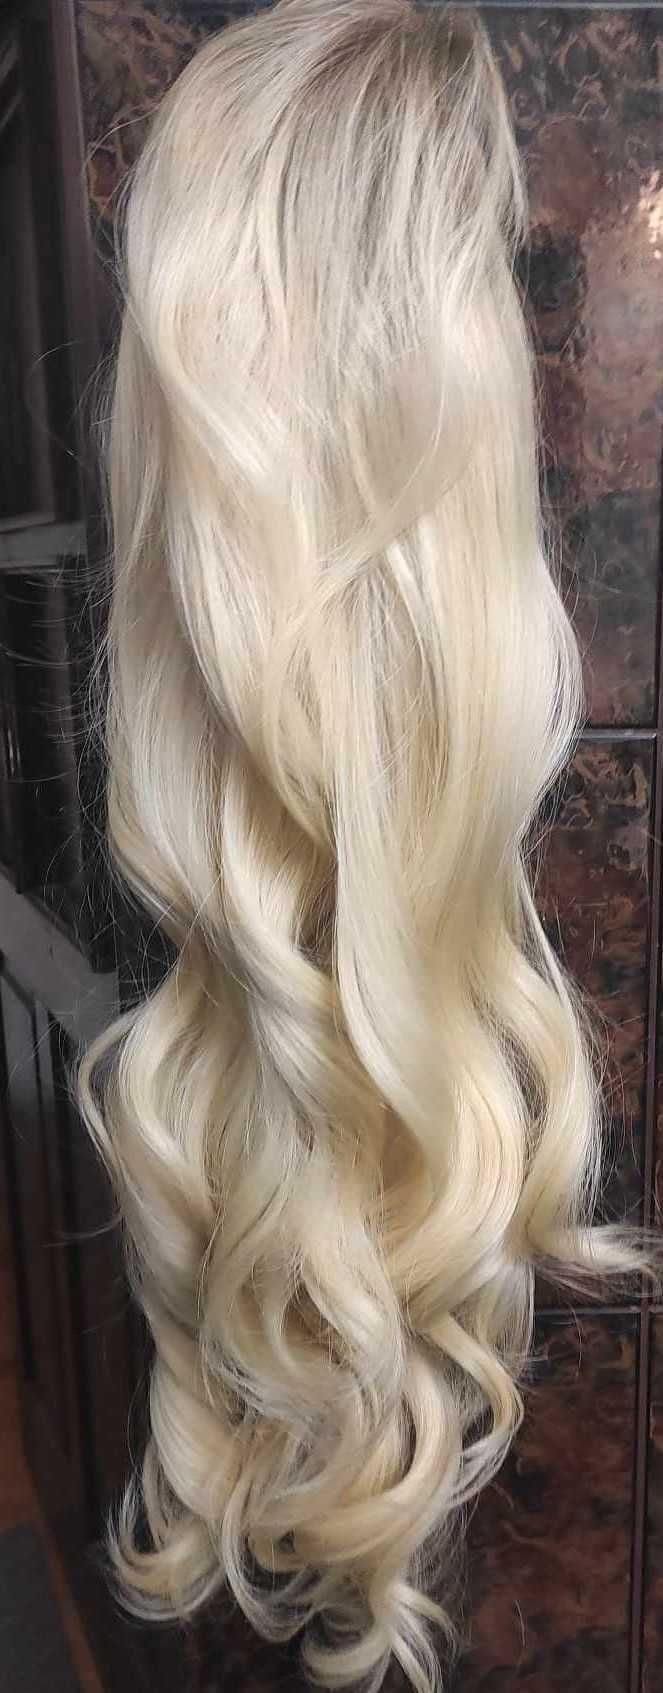 Peruka lace front bardzo jasny złocisty blond włosy jak naturalne